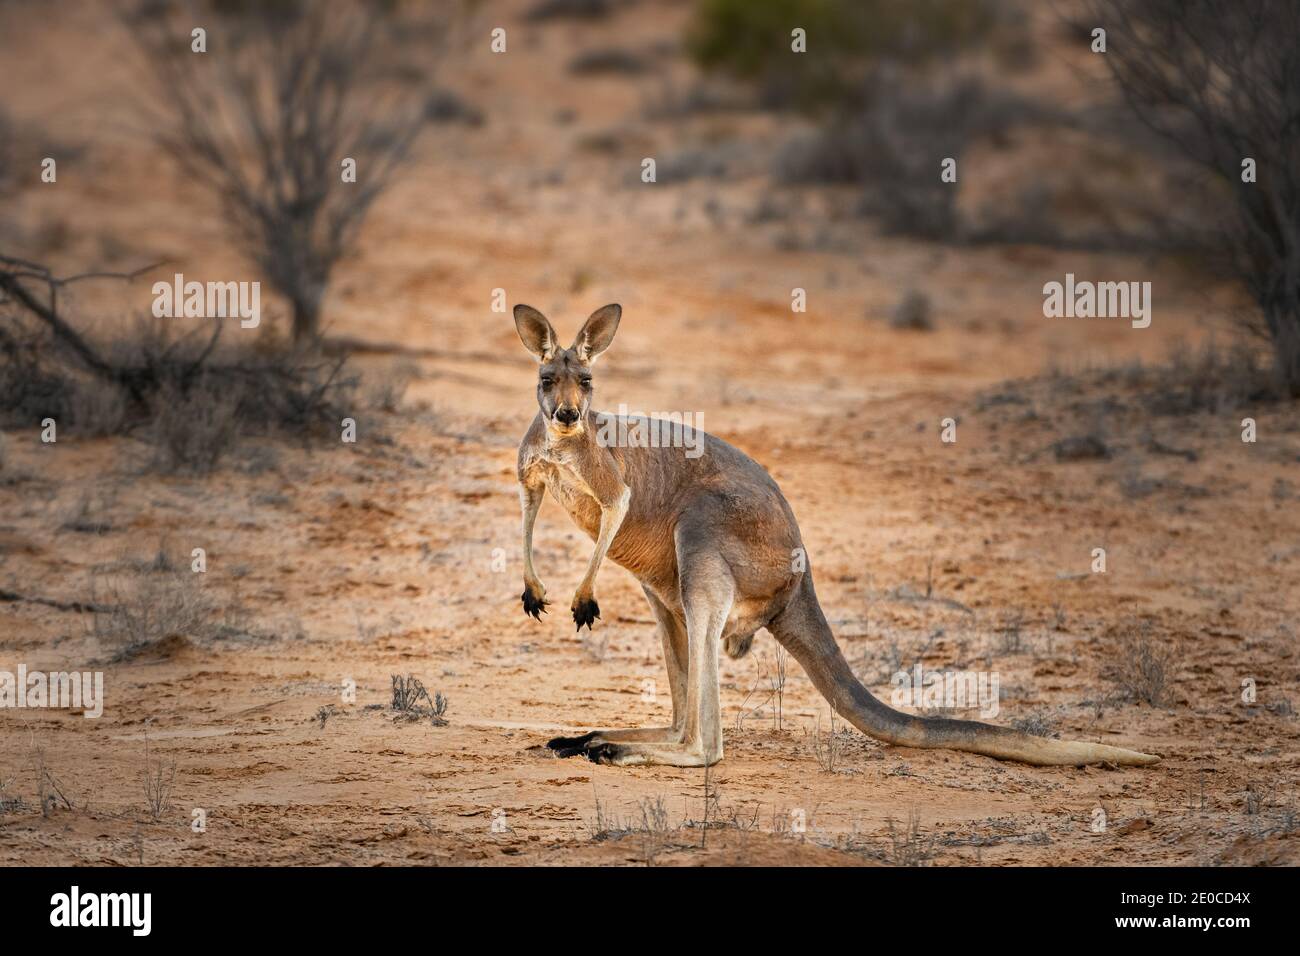 Red Kangaroo in its desert habitat. Stock Photo